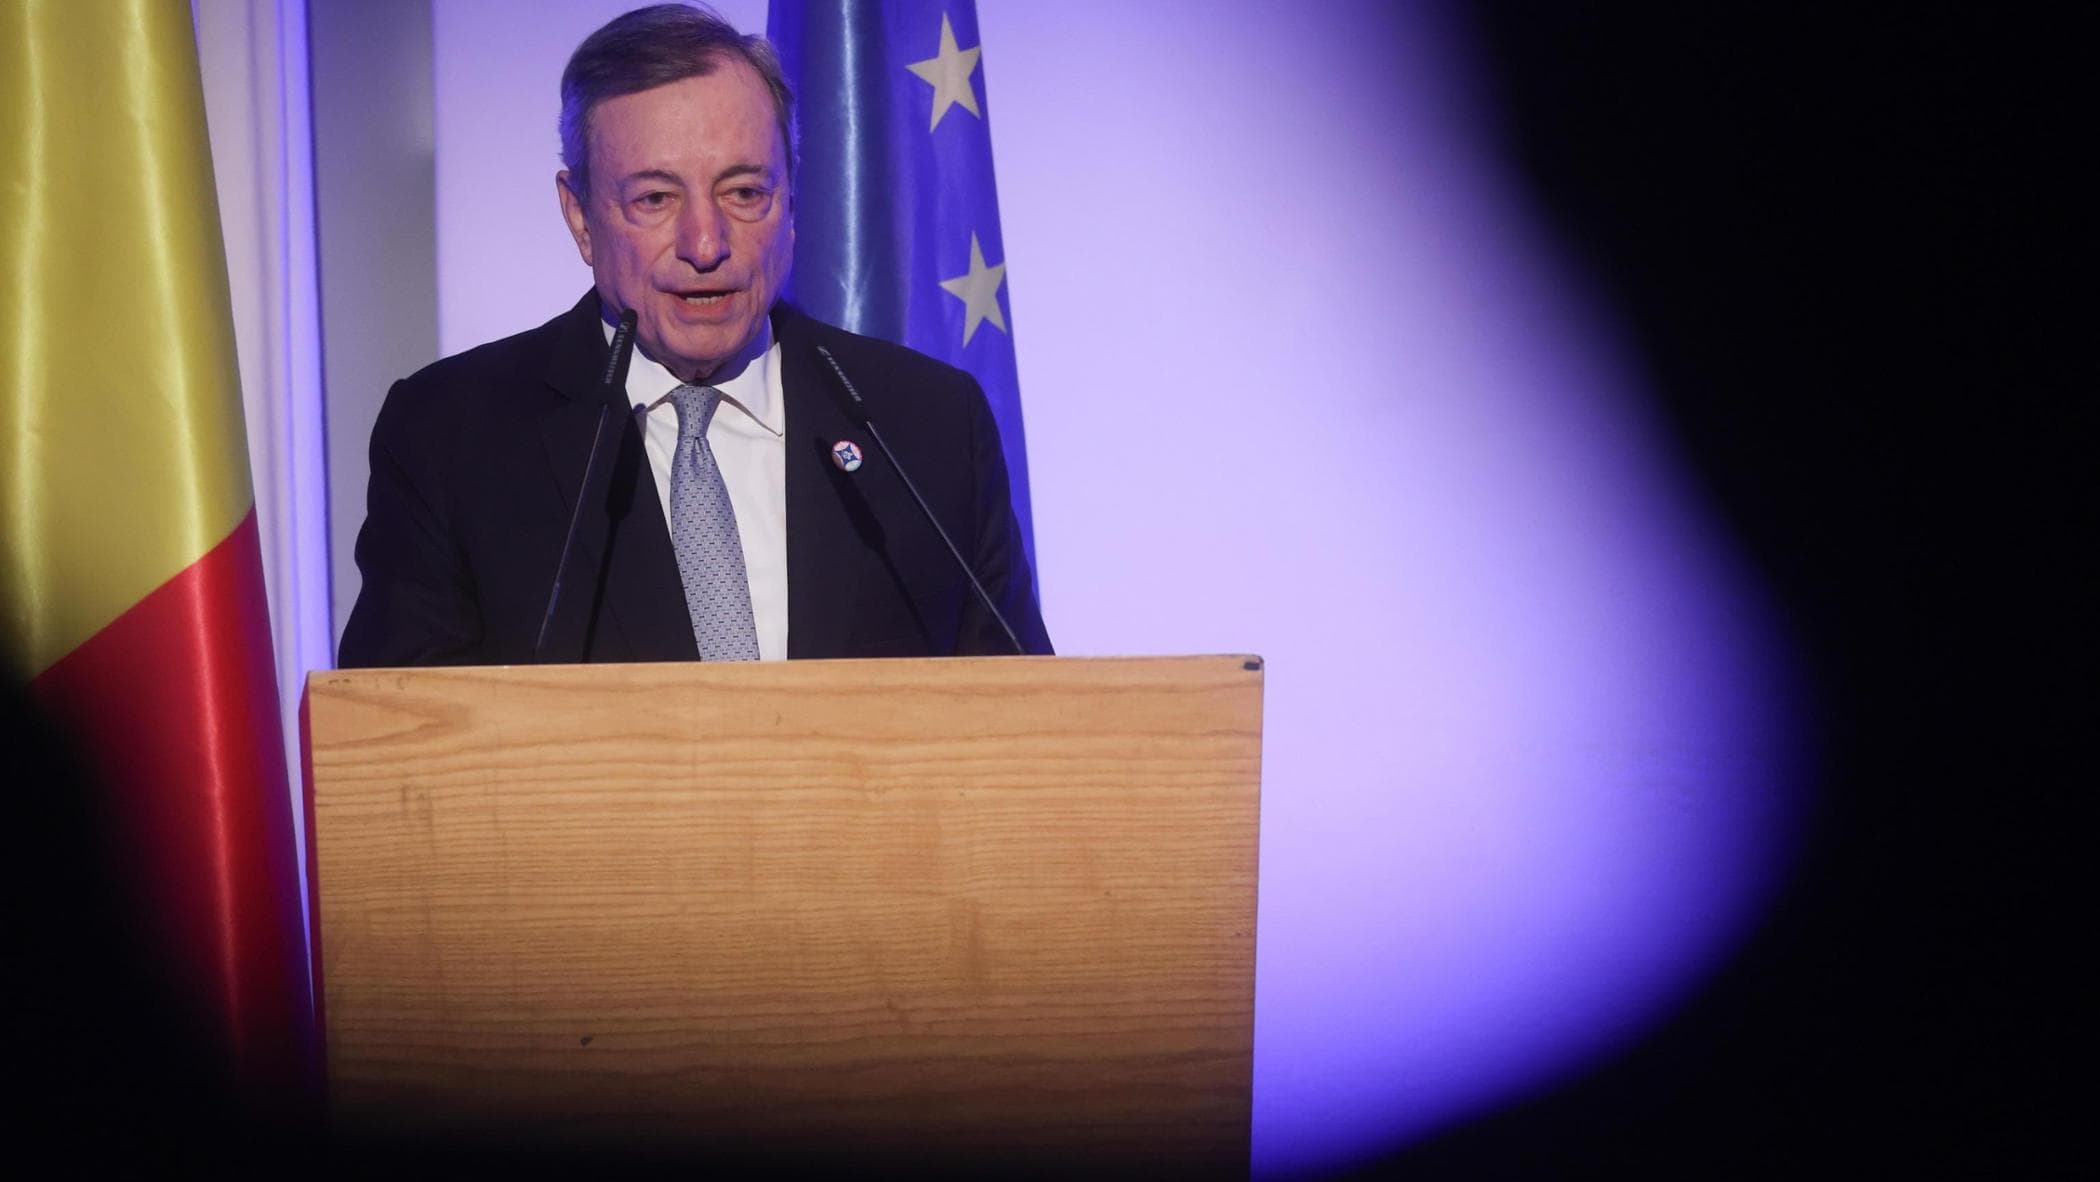 Perché Draghi parla ora e che impatto può avere sulle Europee?